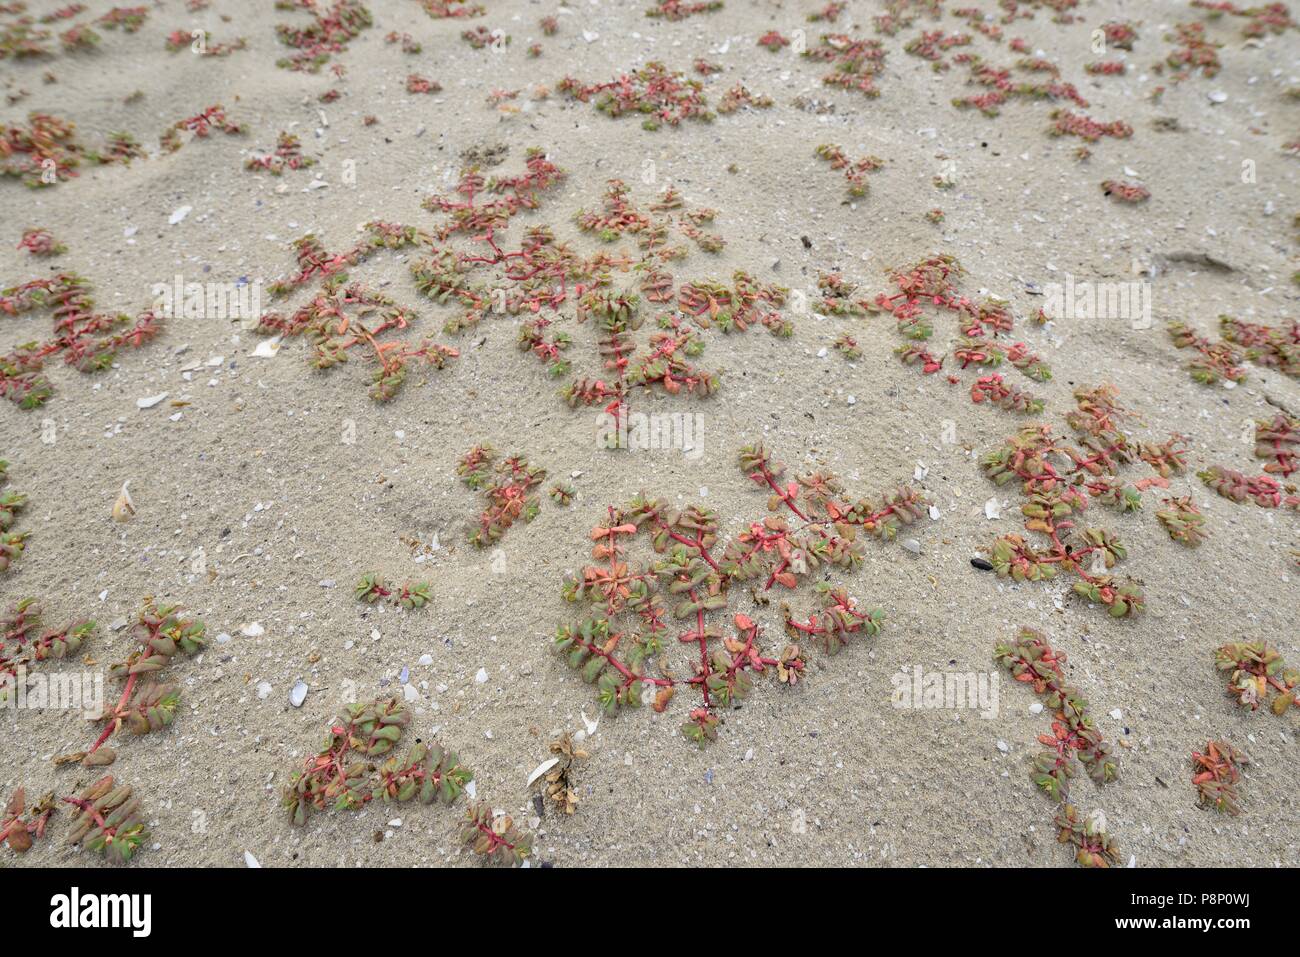 L'euphorbe pourpre, une plante de la plages du sud de l'Europe Banque D'Images